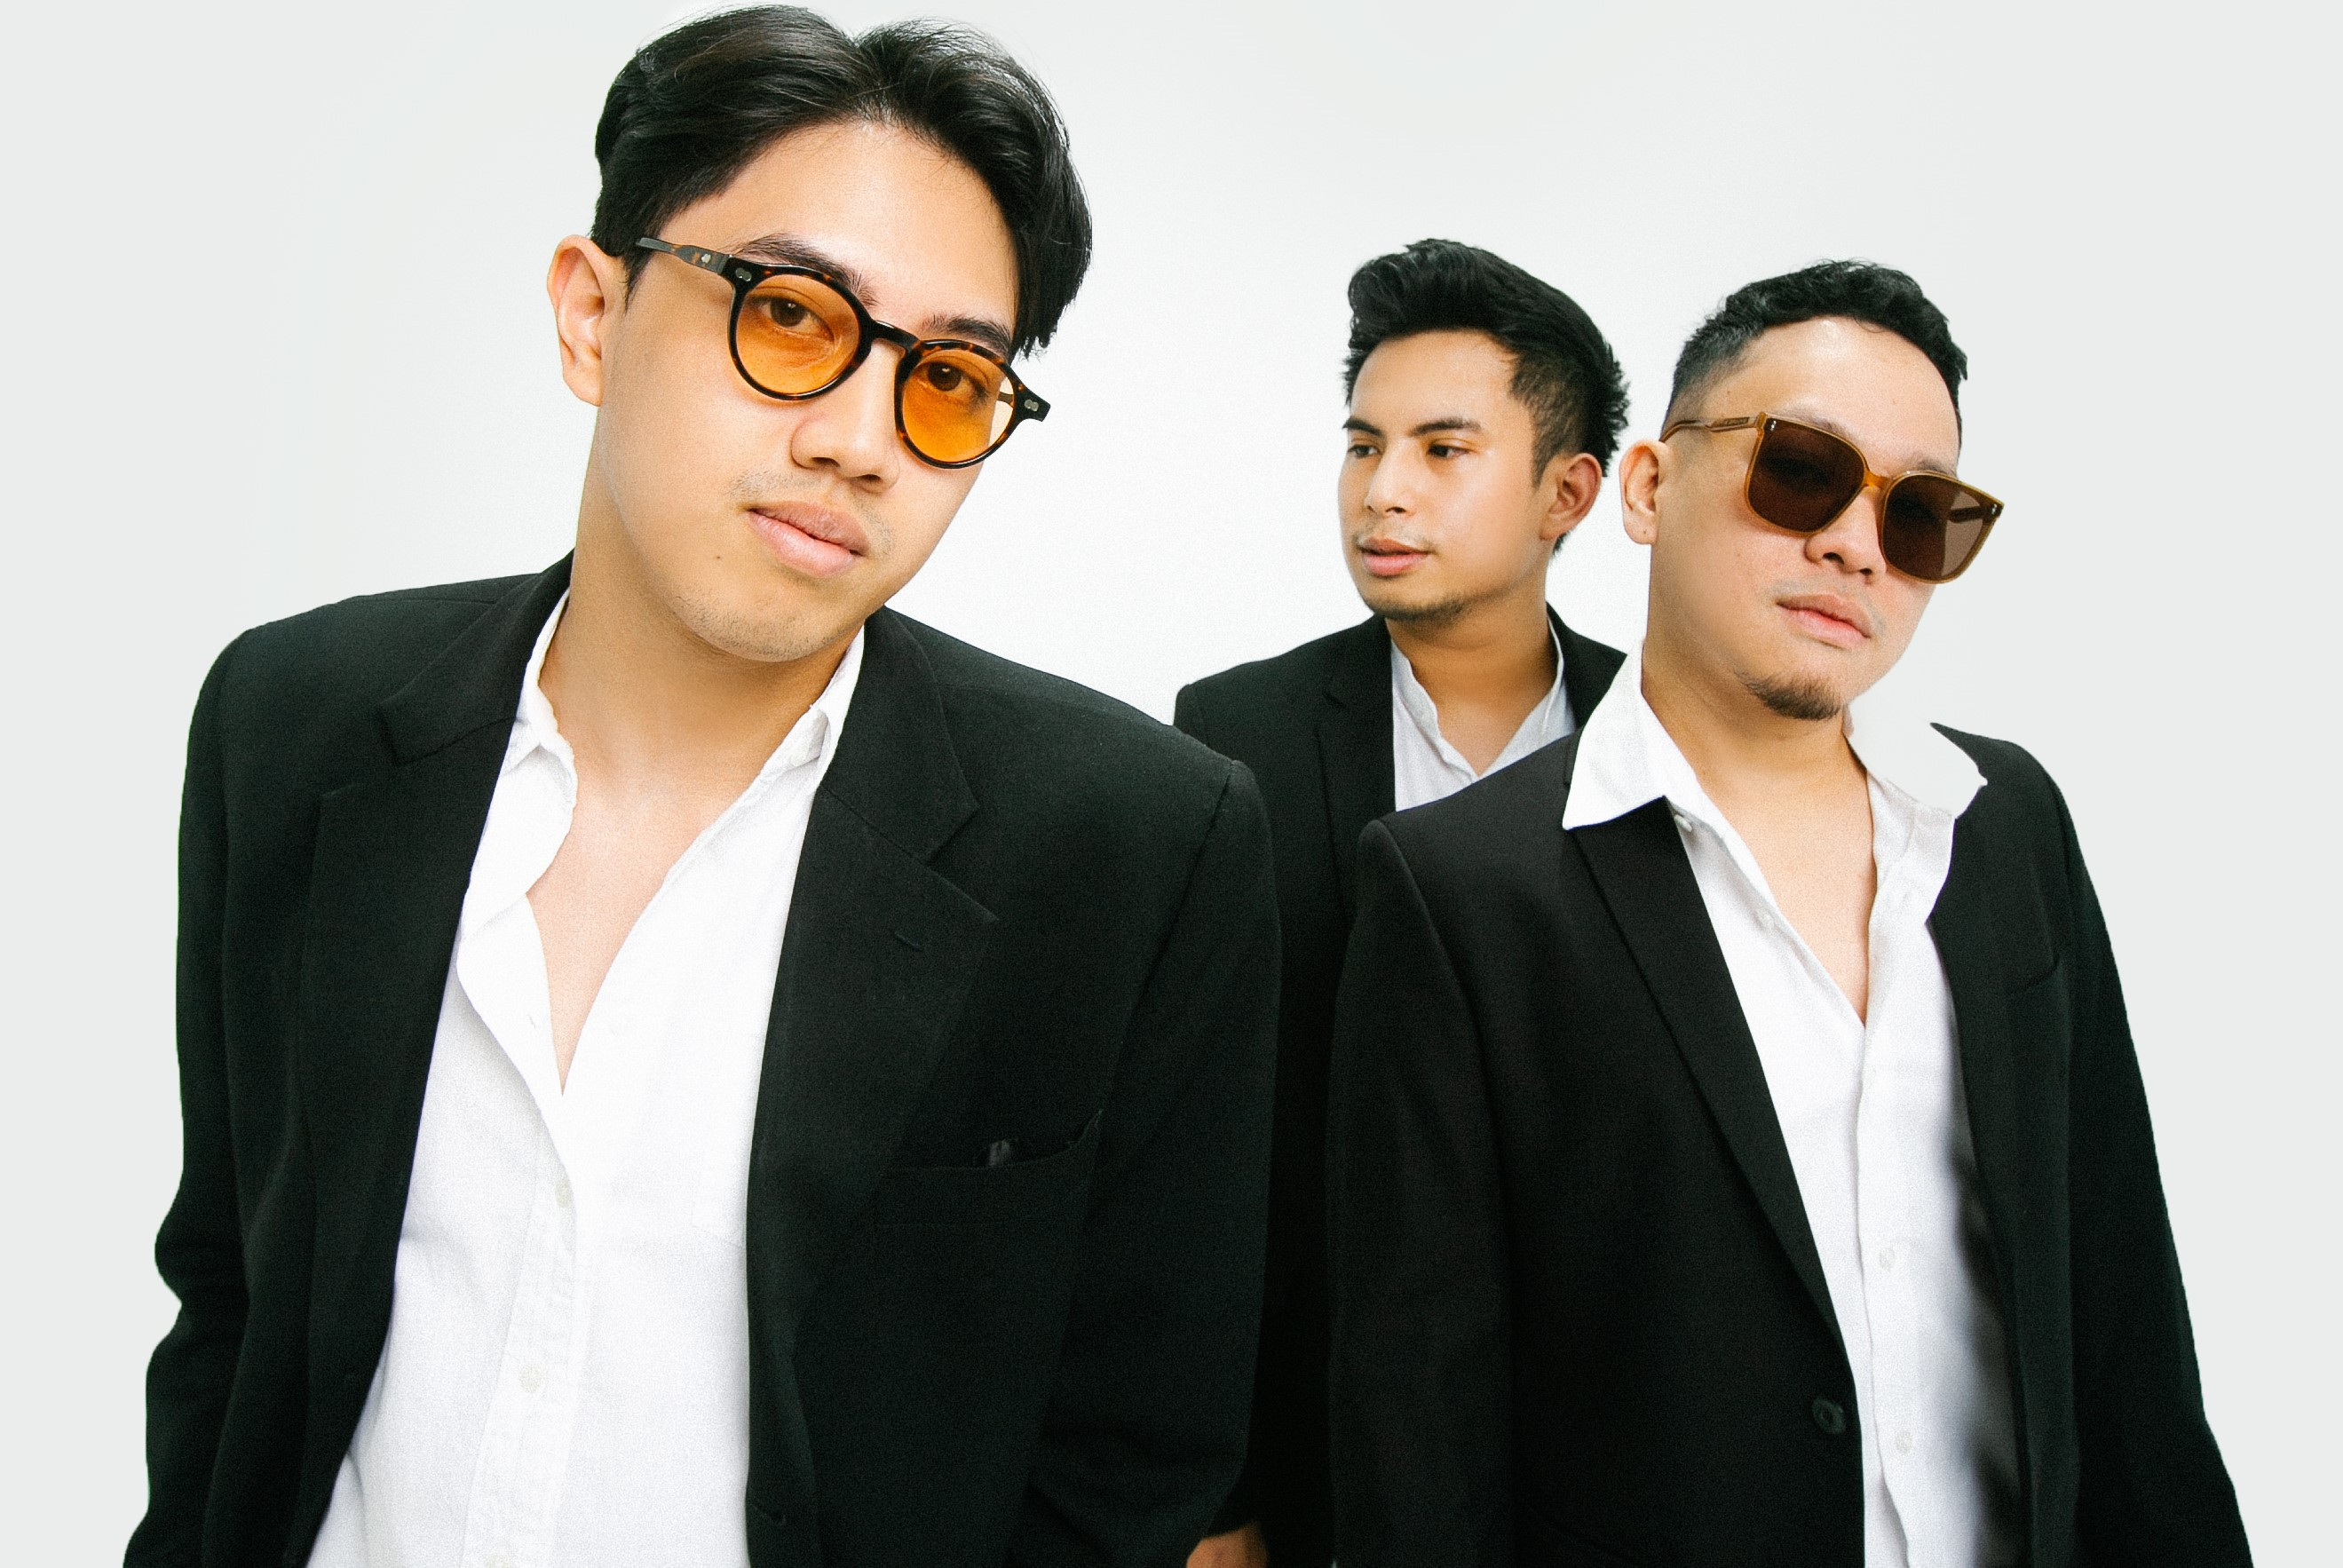 Grup Band Okin, Rockin' Abby Rilis Single Baru "Tak Jadi Jaminan"